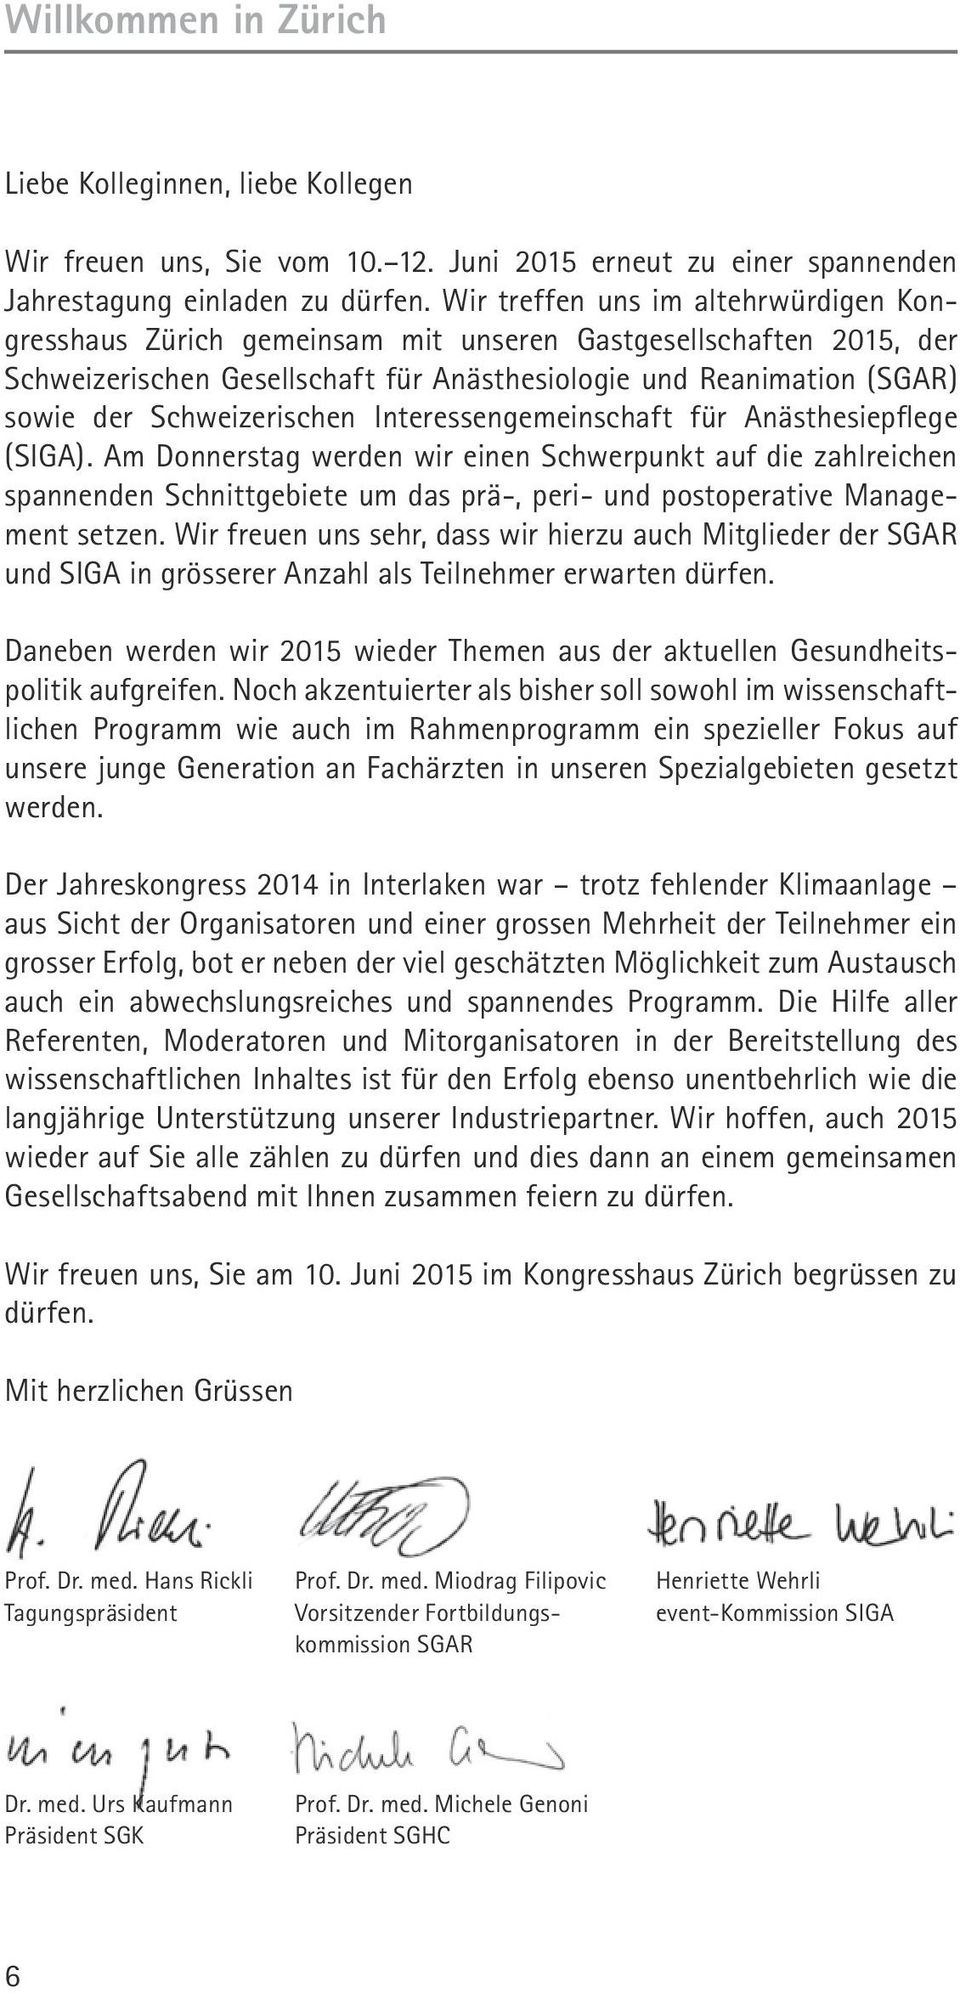 Schweizerischen Interessengemeinschaft für Anästhesiepflege (SIGA).